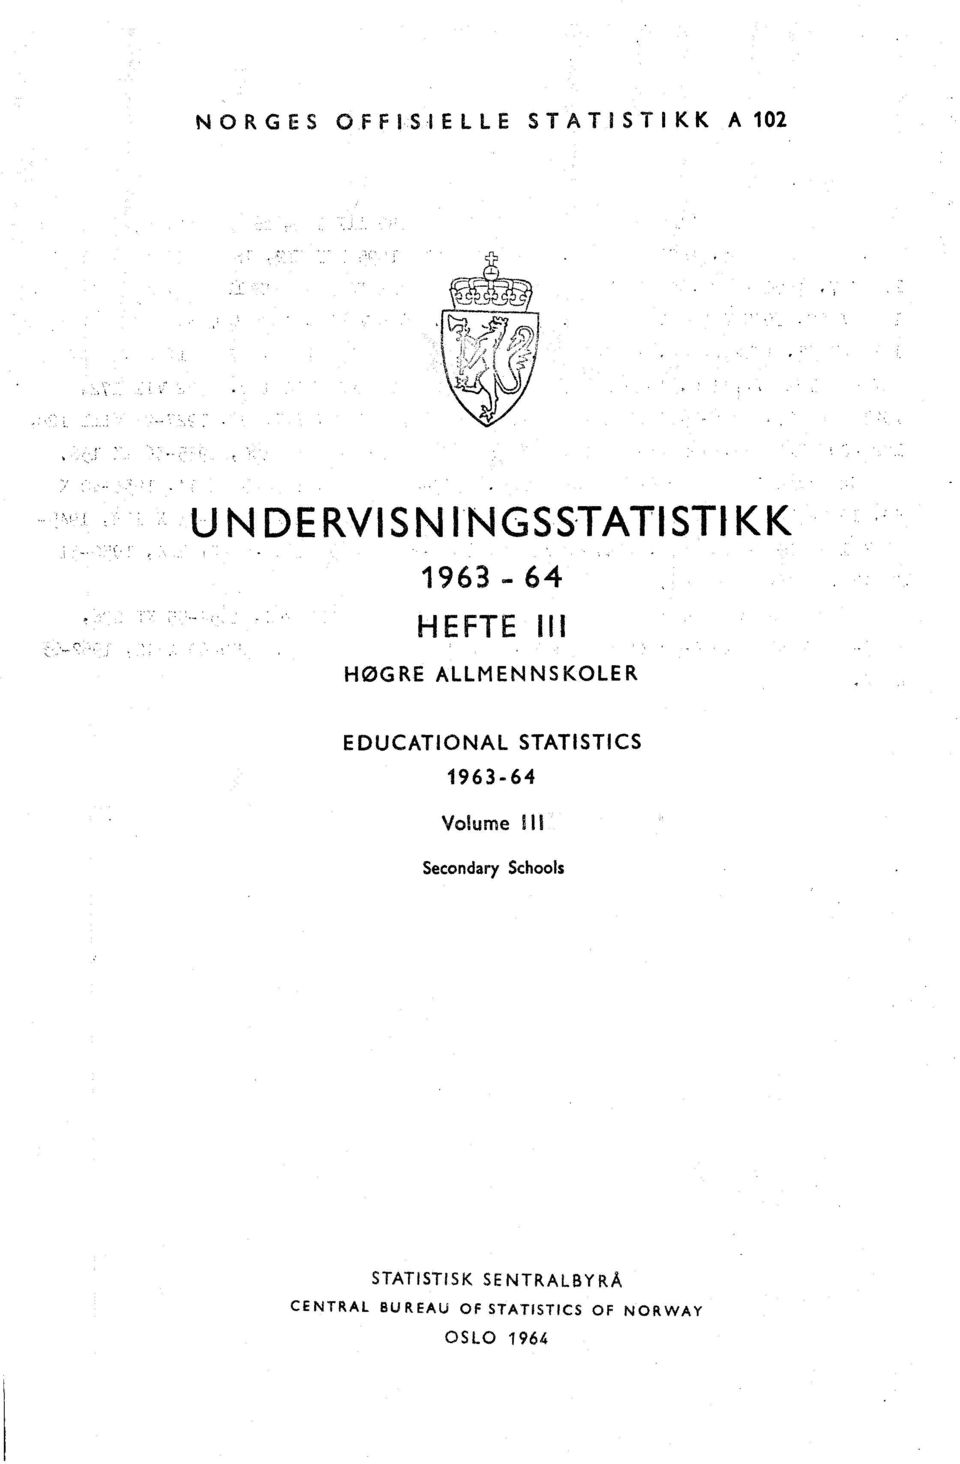 ALLMENNSKOLER EDUCATIONAL STATISTICS 9636 Volume III